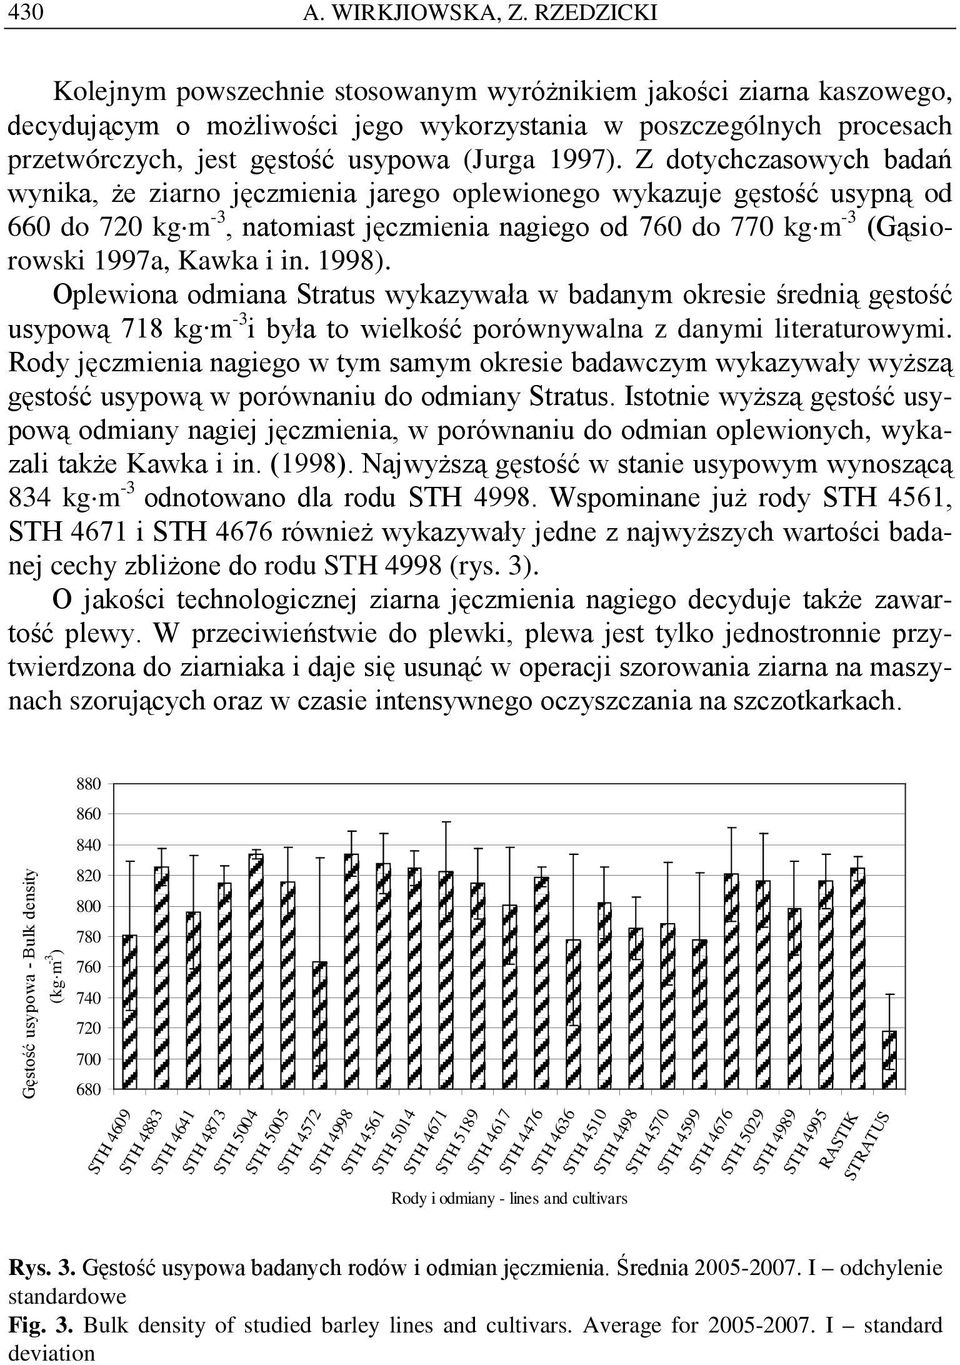 Z dotychczasowych badań wynika, że ziarno jęczmienia jarego oplewionego wykazuje gęstość usypną od 660 do 720 kg m -3, natomiast jęczmienia nagiego od 760 do 770 kg m -3 (Gąsiorowski 1997a, Kawka i